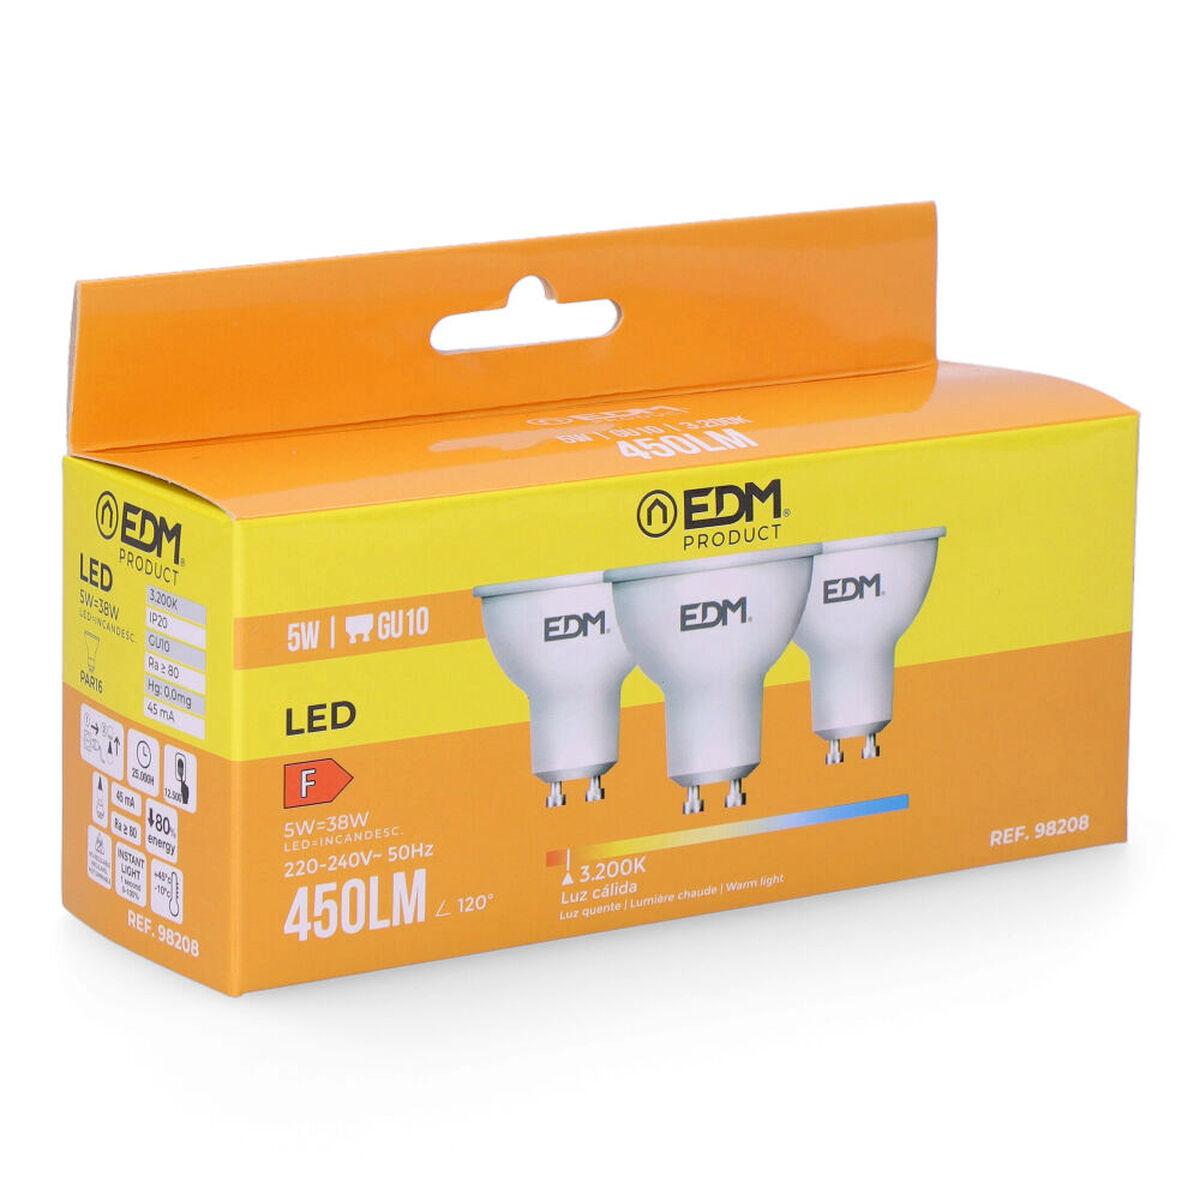 LED-lampe EDM 5 W GU10 450 lm F (3200 K)